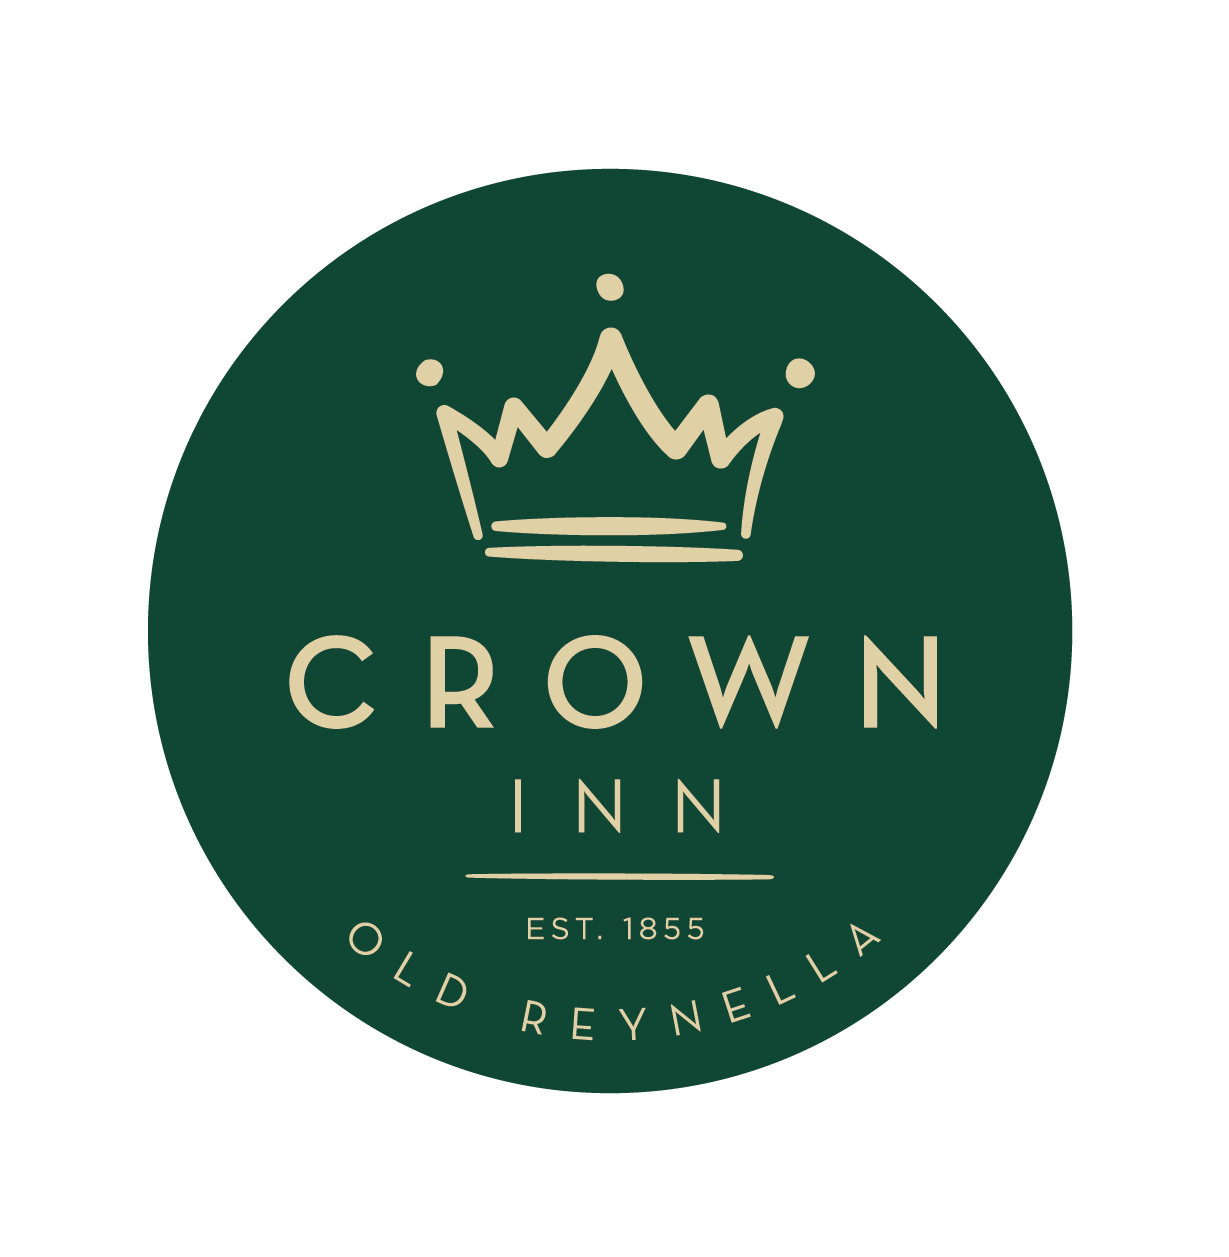 Crown Inn Functions